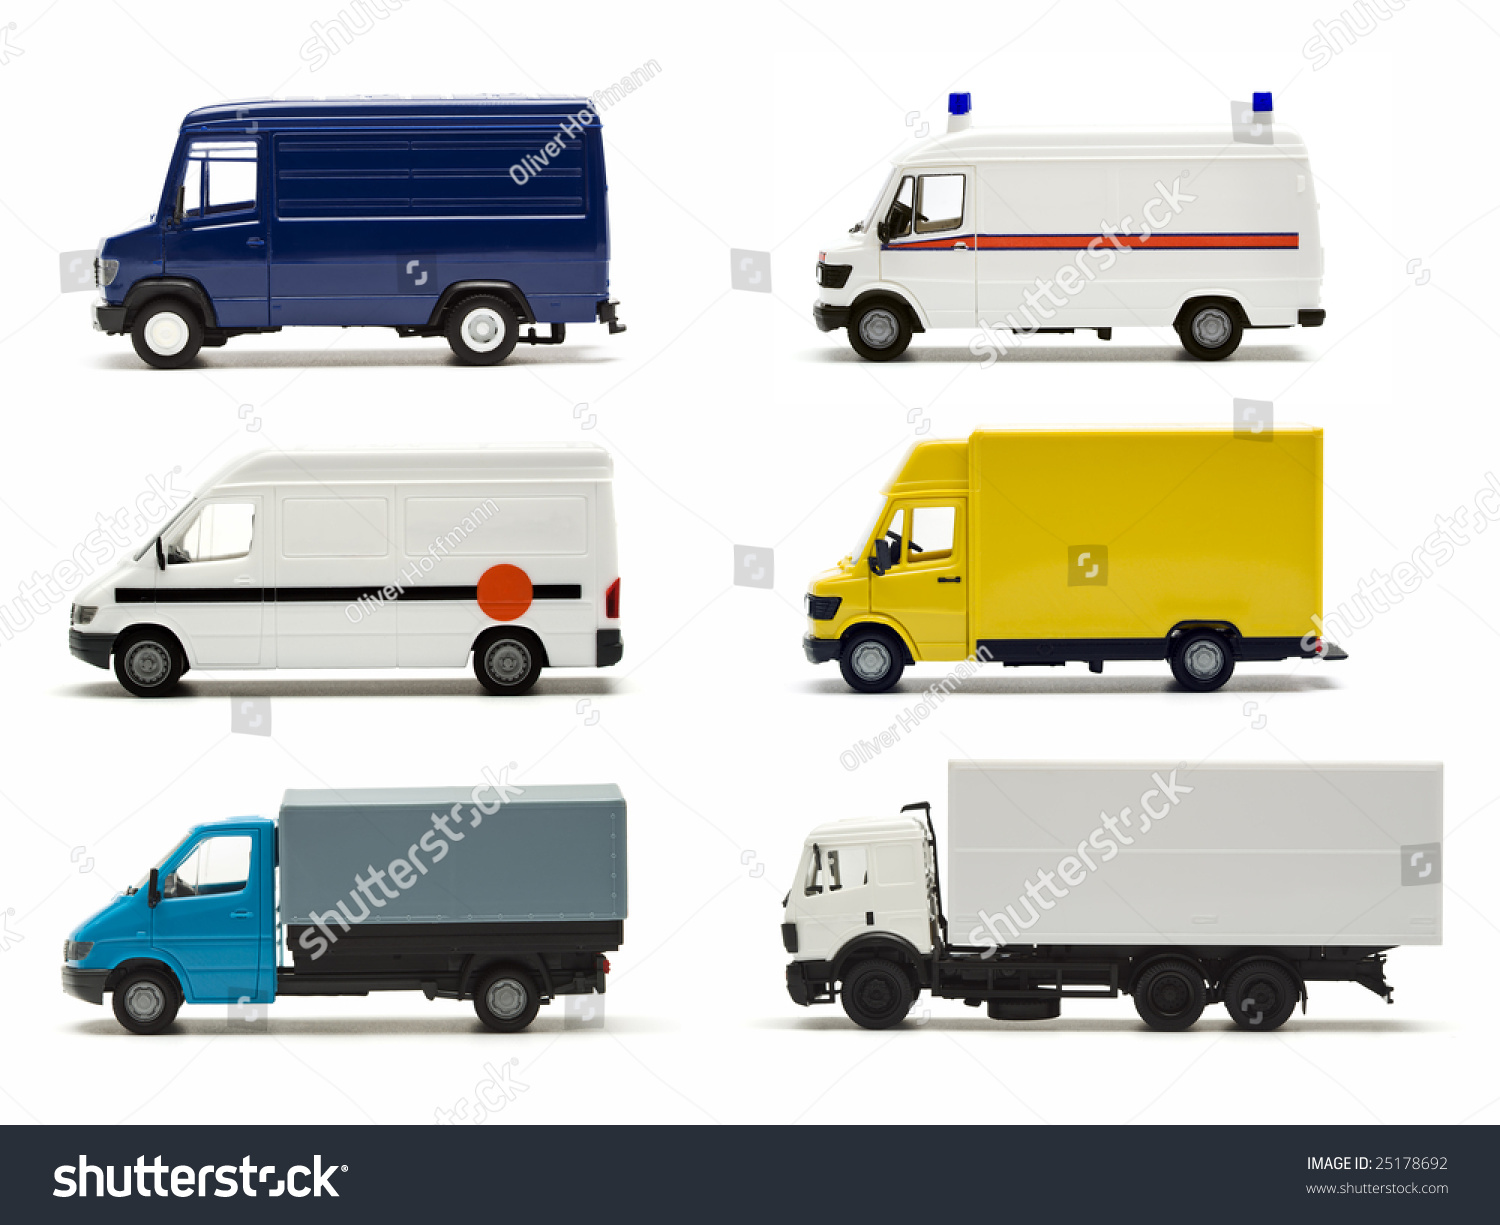 miniature vans